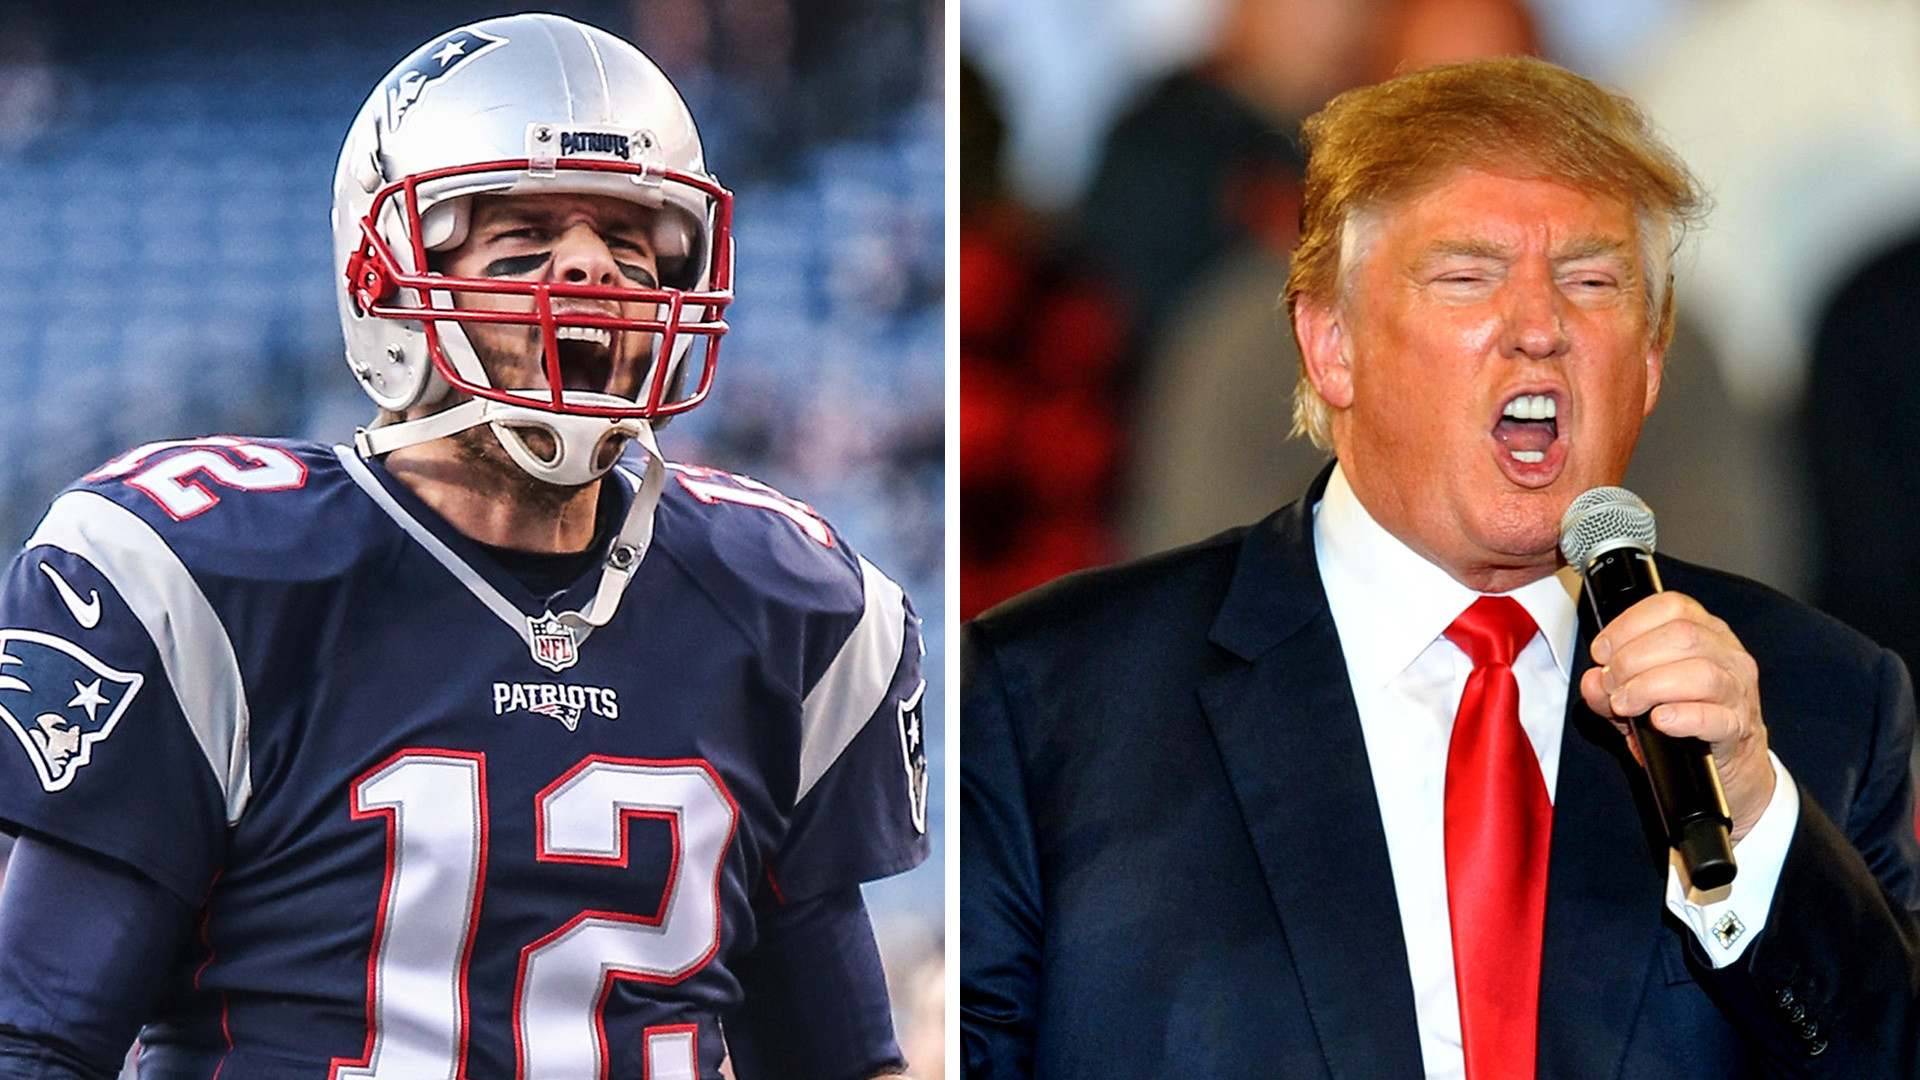 1920x1080 Donald Trump talks like he's Tom Brady's biggest fan | NFL | Sporting News